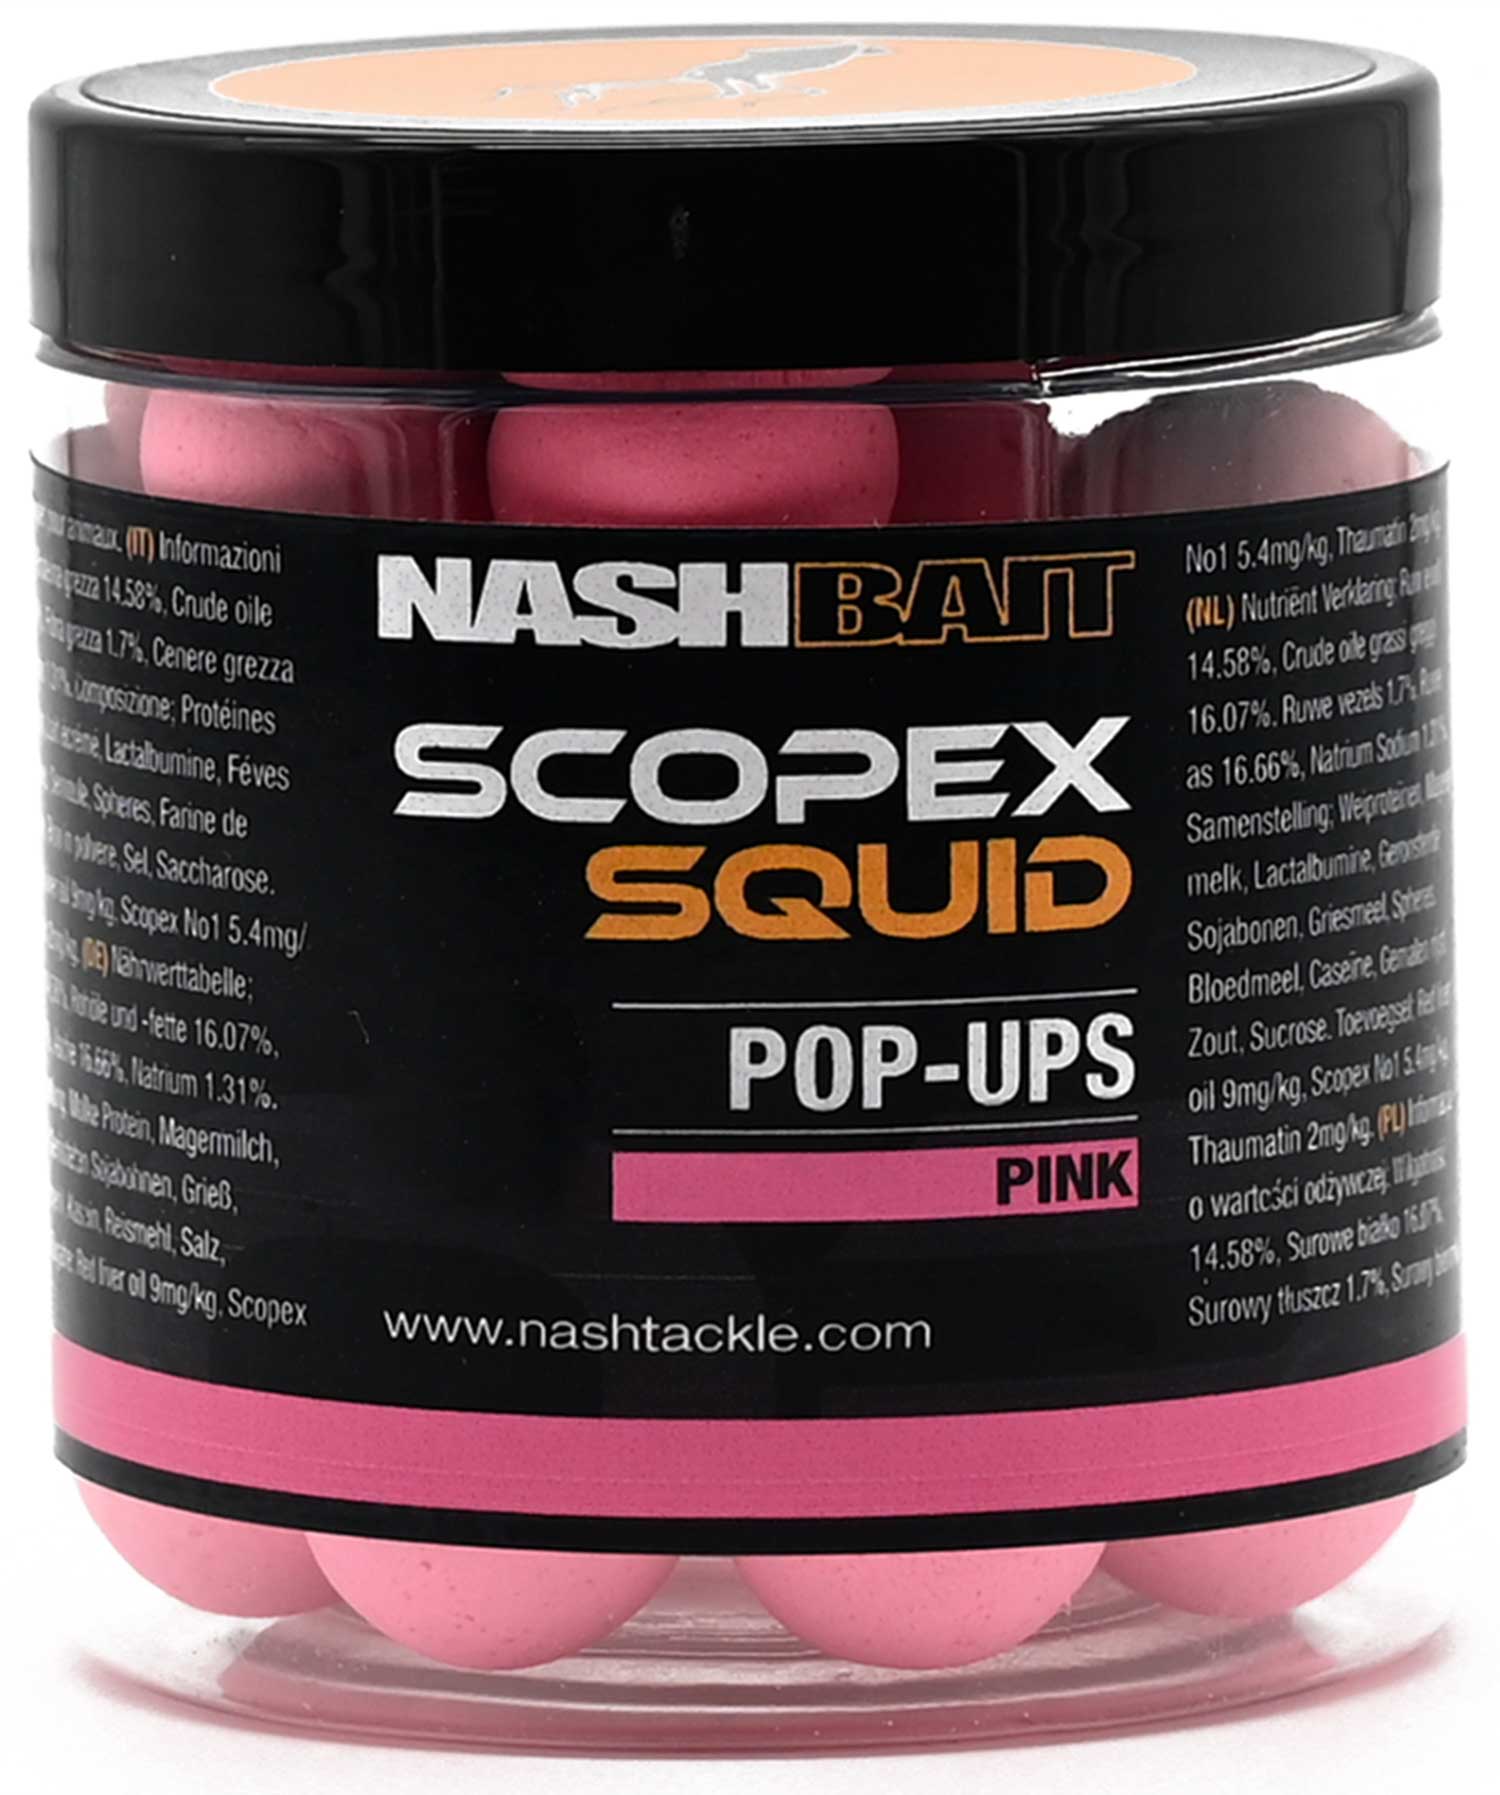 Nash Scopex Squid Pop Ups - Pink